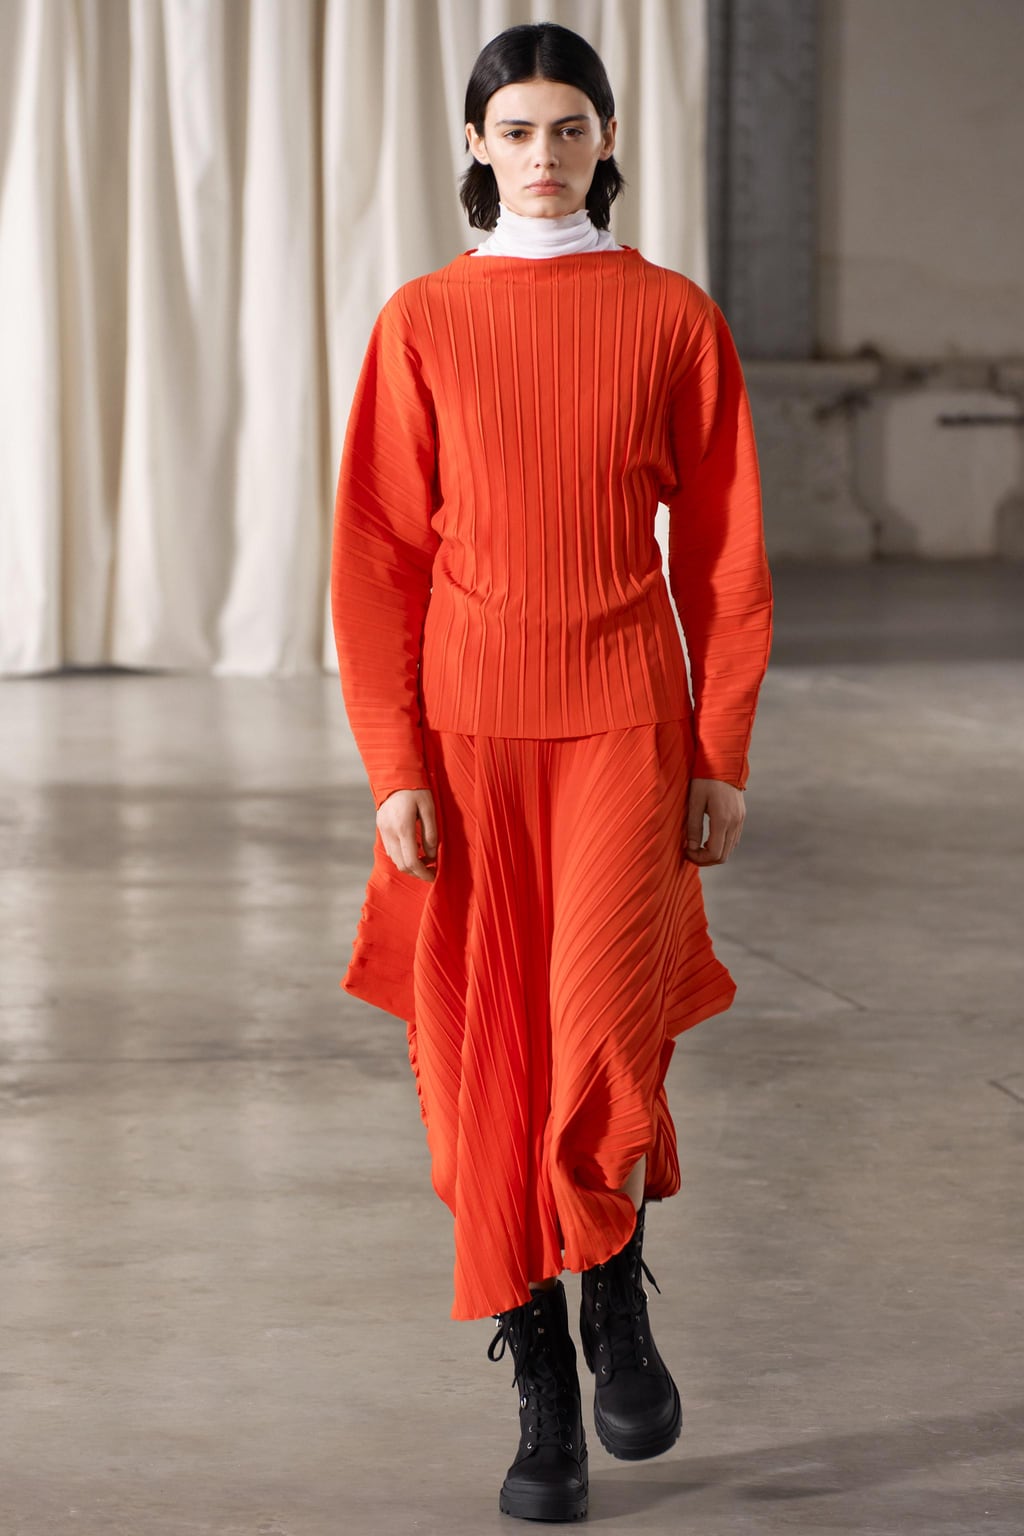 Асимметричная юбка со складками ZARA, красный апельсин юбка женская трапециевидная с завышенной талией модная классическая базовая черная короткая плиссированная юбка мини весна лето